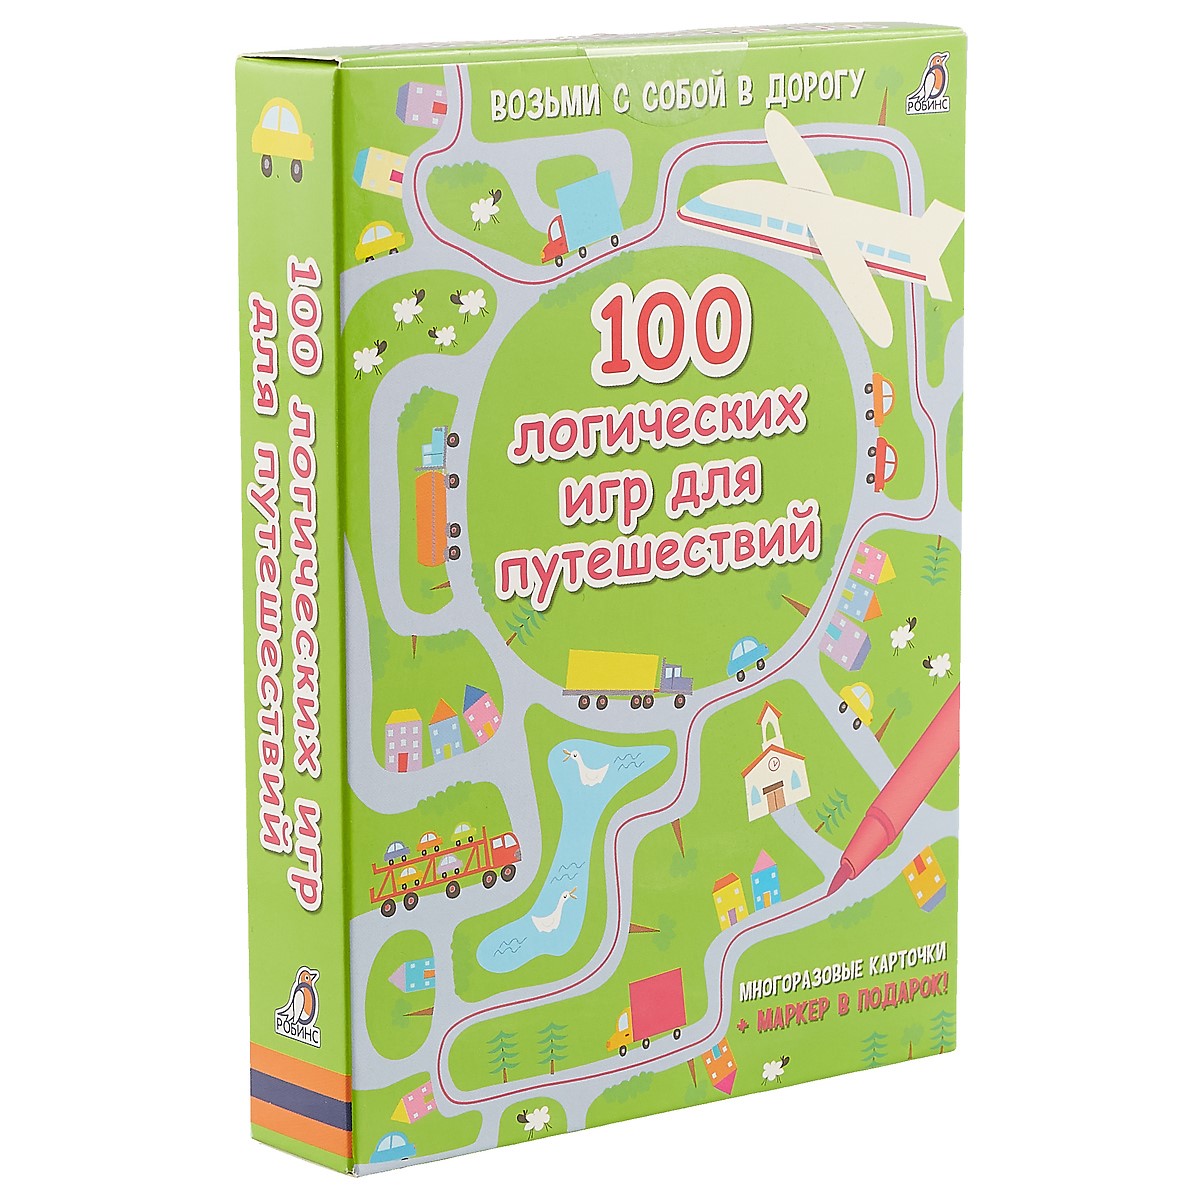 Асборн - карточки. 100 логических игр для путешествий асборн карточки 100 логических игр и головоломок елена писарева